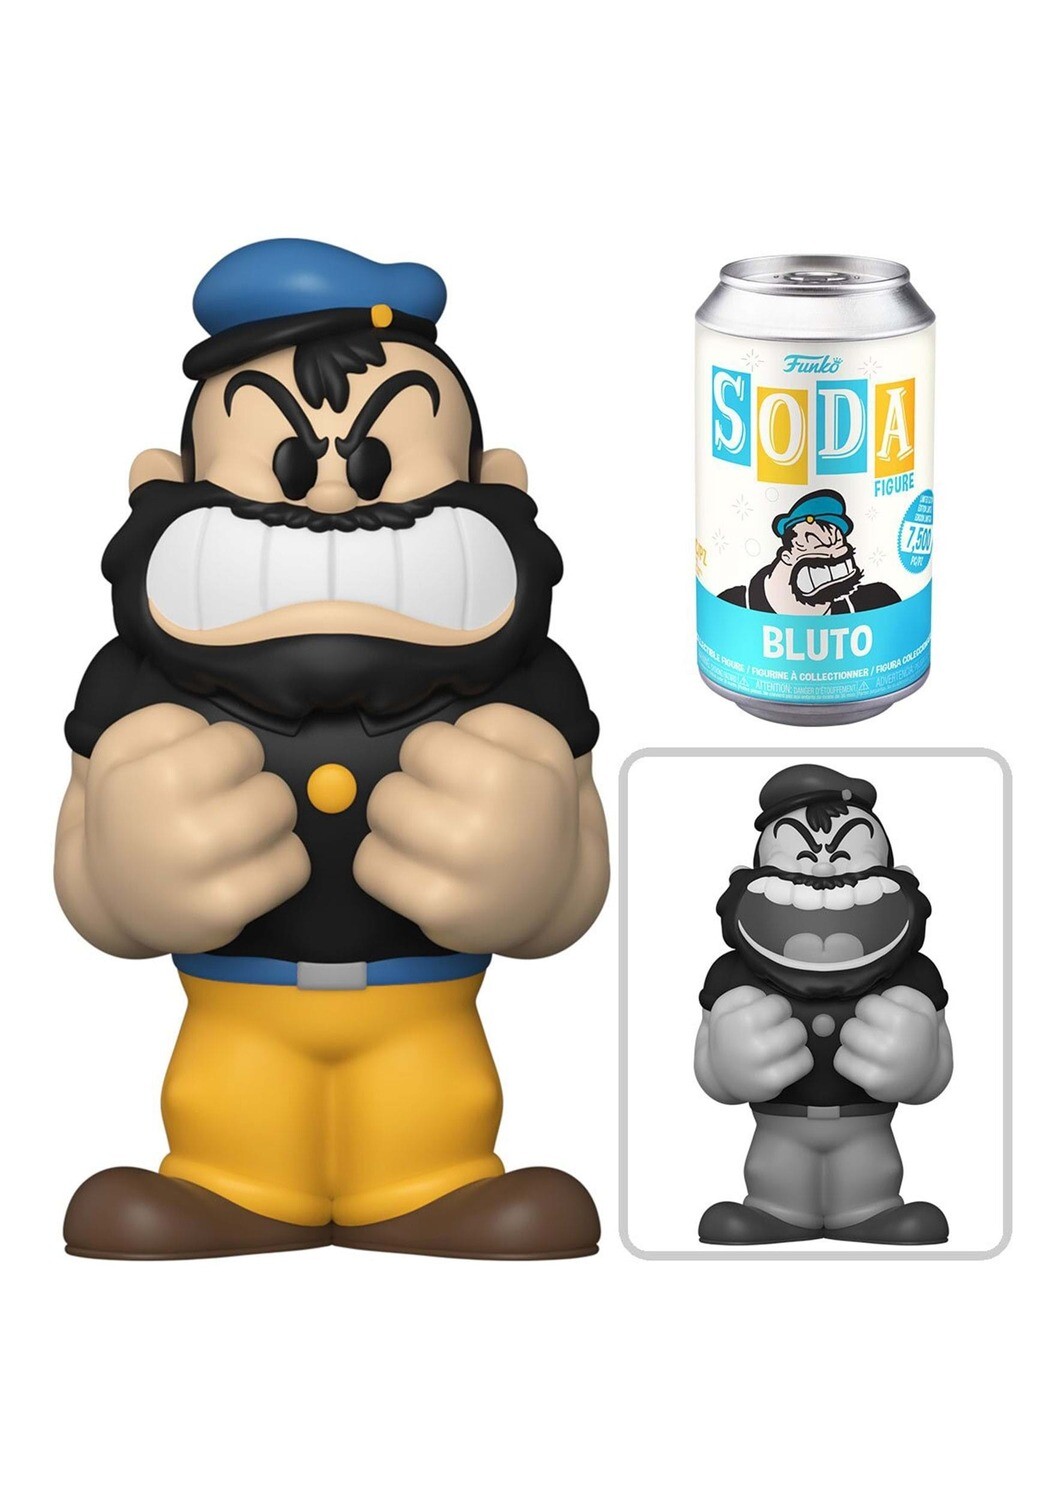 Popeye - Bluto (Brutus) POP! Vinyl Soda Figure